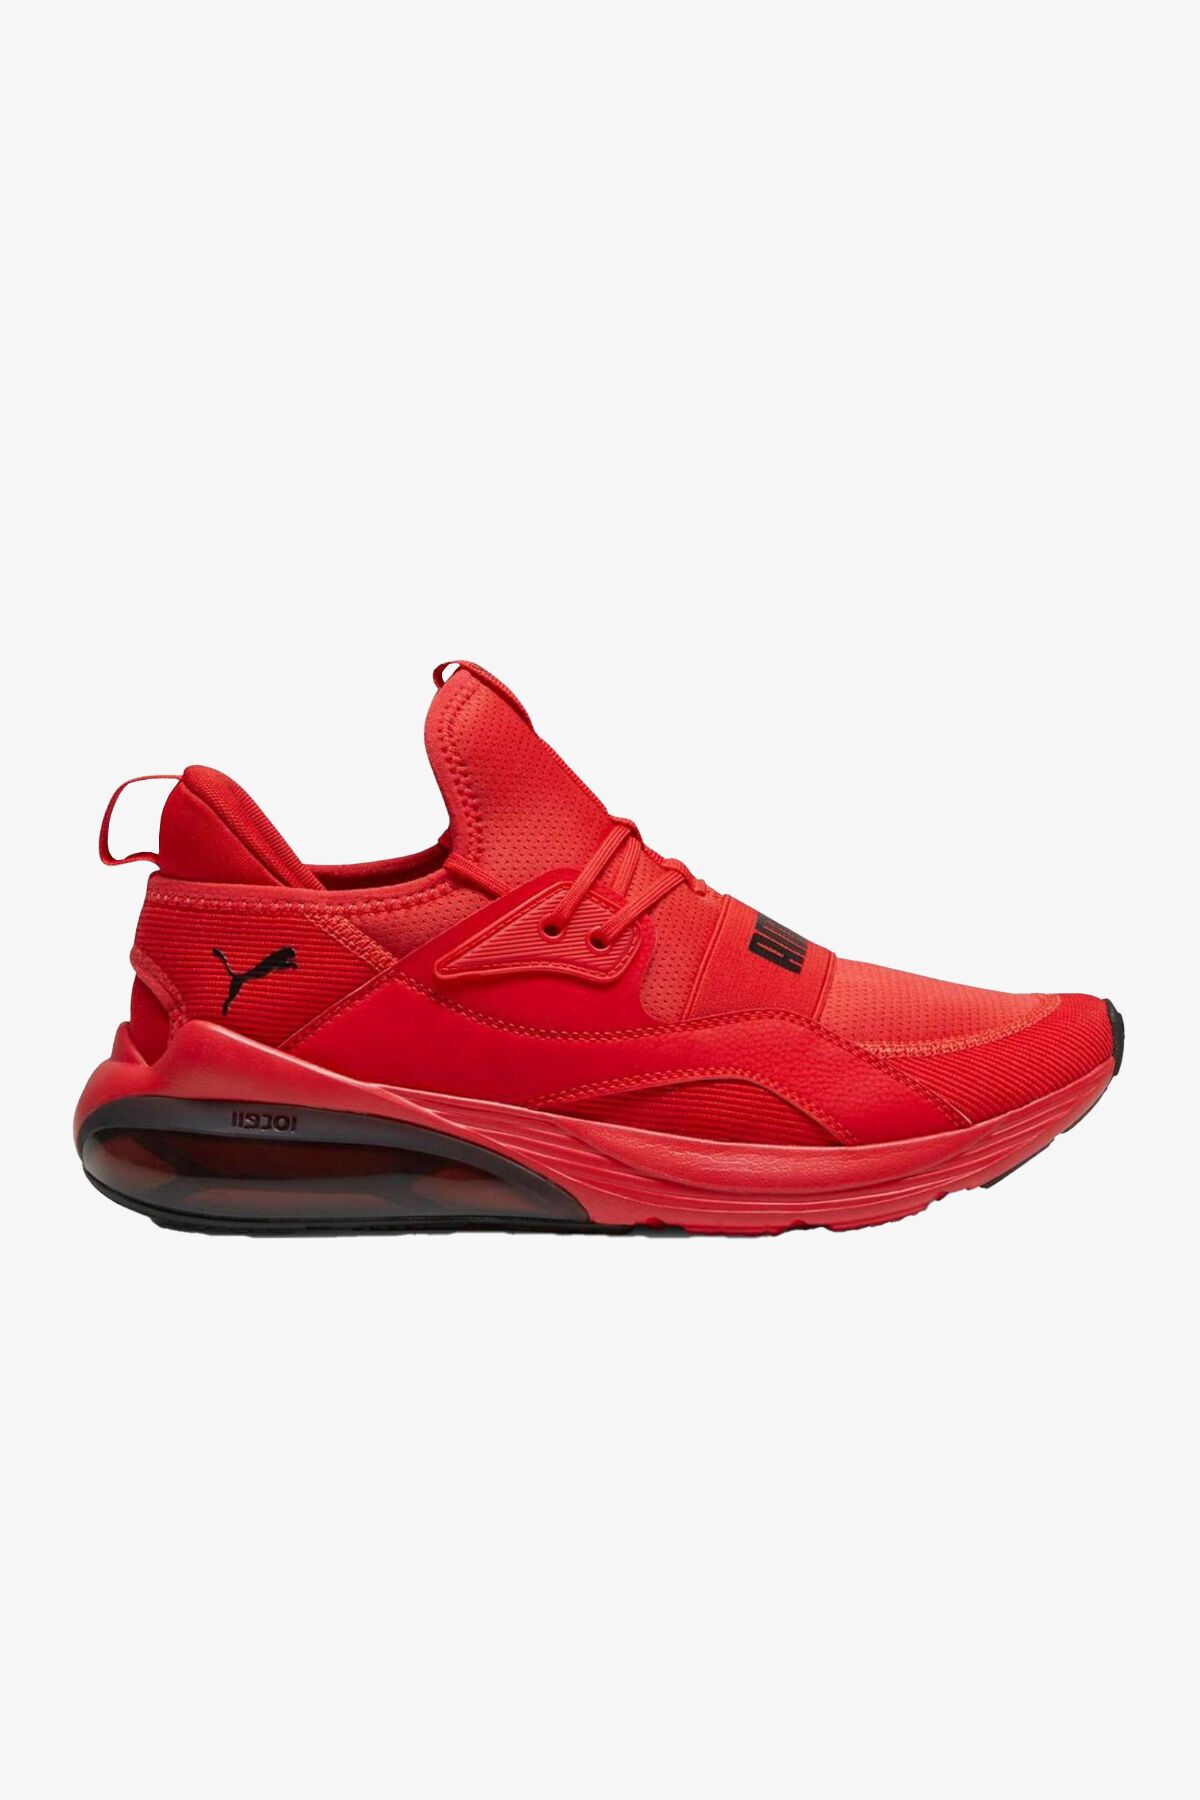 Puma Cell Vive Intake Erkek Kırmızı Sneaker 37790507